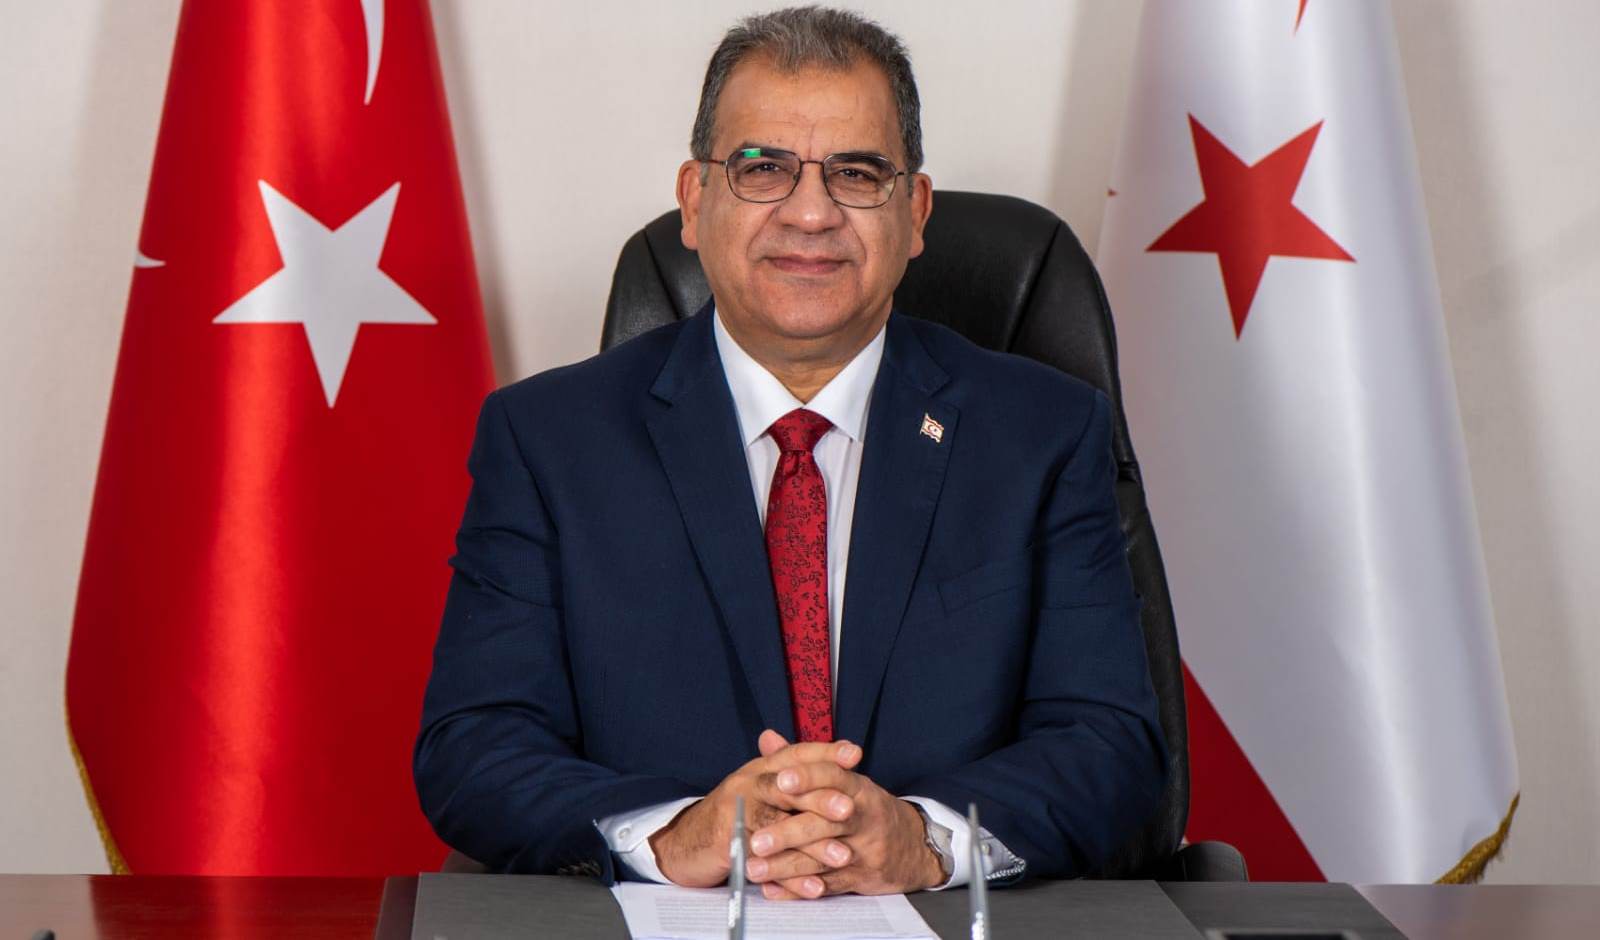 Başbakan Sucuoğlu, Kurucu Cumhurbaşkanı Rauf Denktaş’ın 10. ölüm yıl dönümü nedeniyle mesaj yayımladı